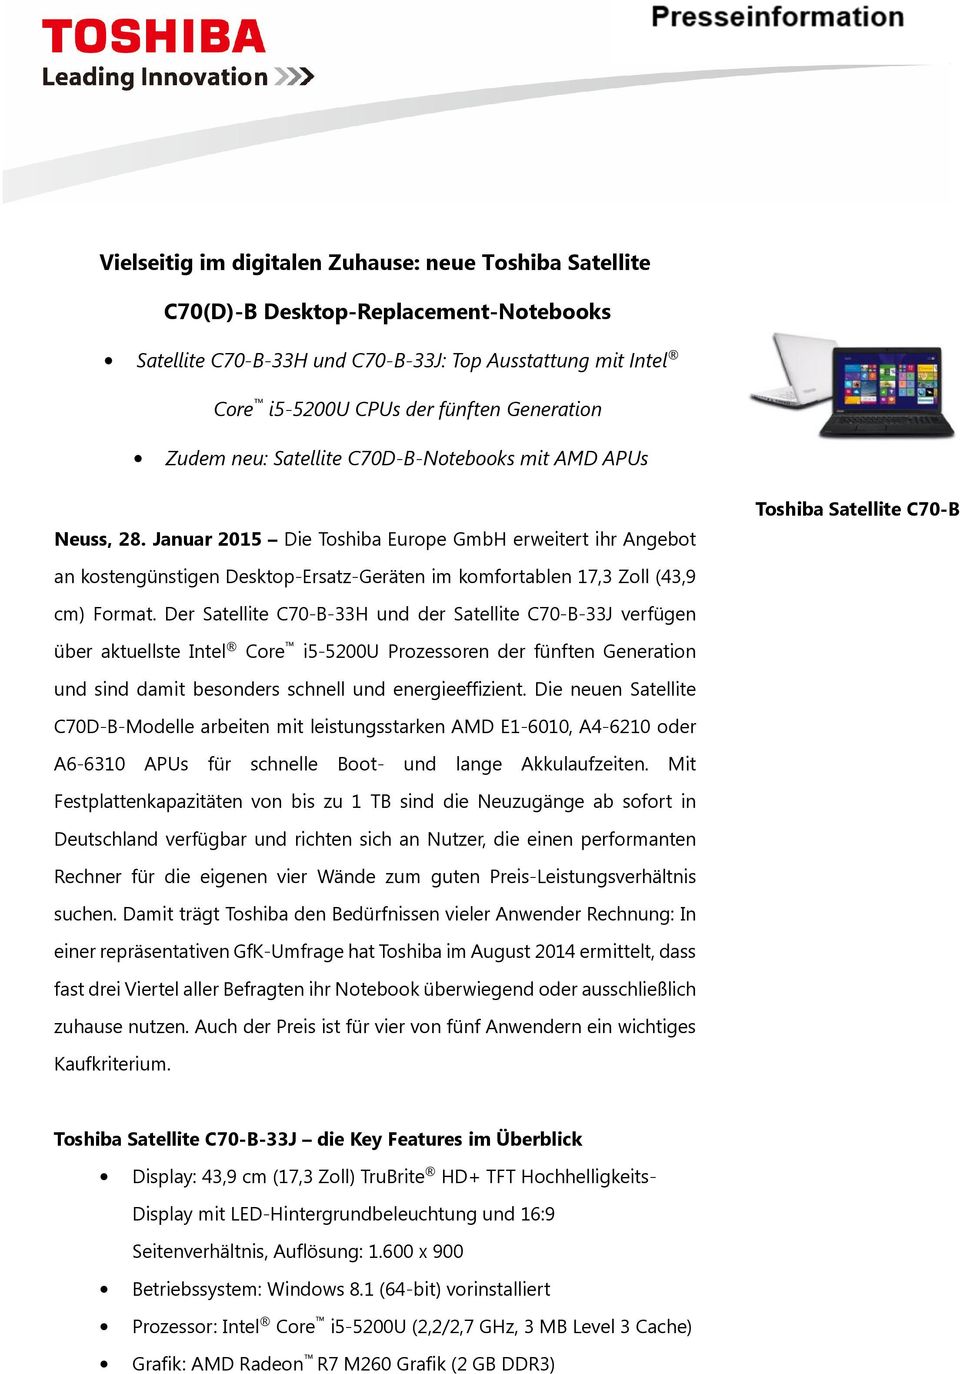 Januar 2015 Die Toshiba Europe GmbH erweitert ihr Angebot Toshiba Satellite C70-B an kostengünstigen Desktop-Ersatz-Geräten im komfortablen 17,3 Zoll (43,9 cm) Format.